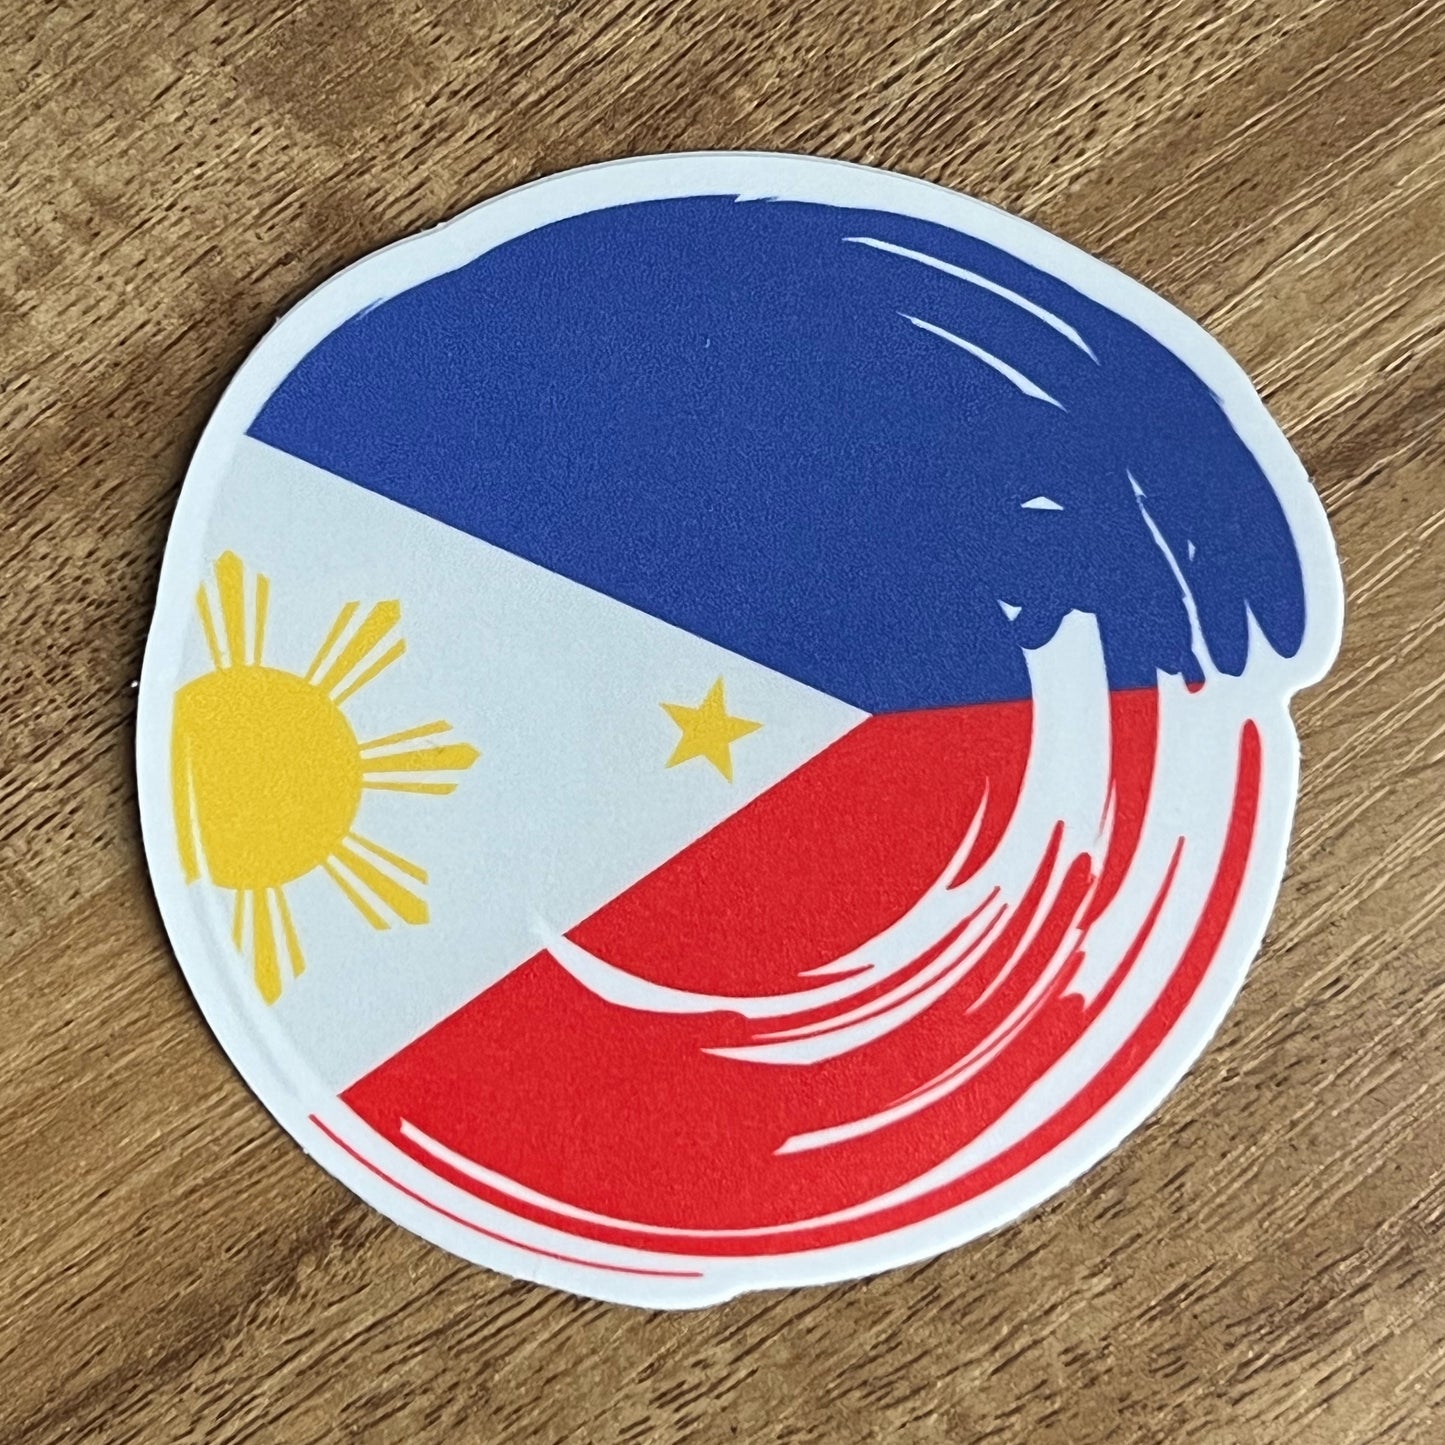 Philippines Flag 3X3" Vinyl Sticker